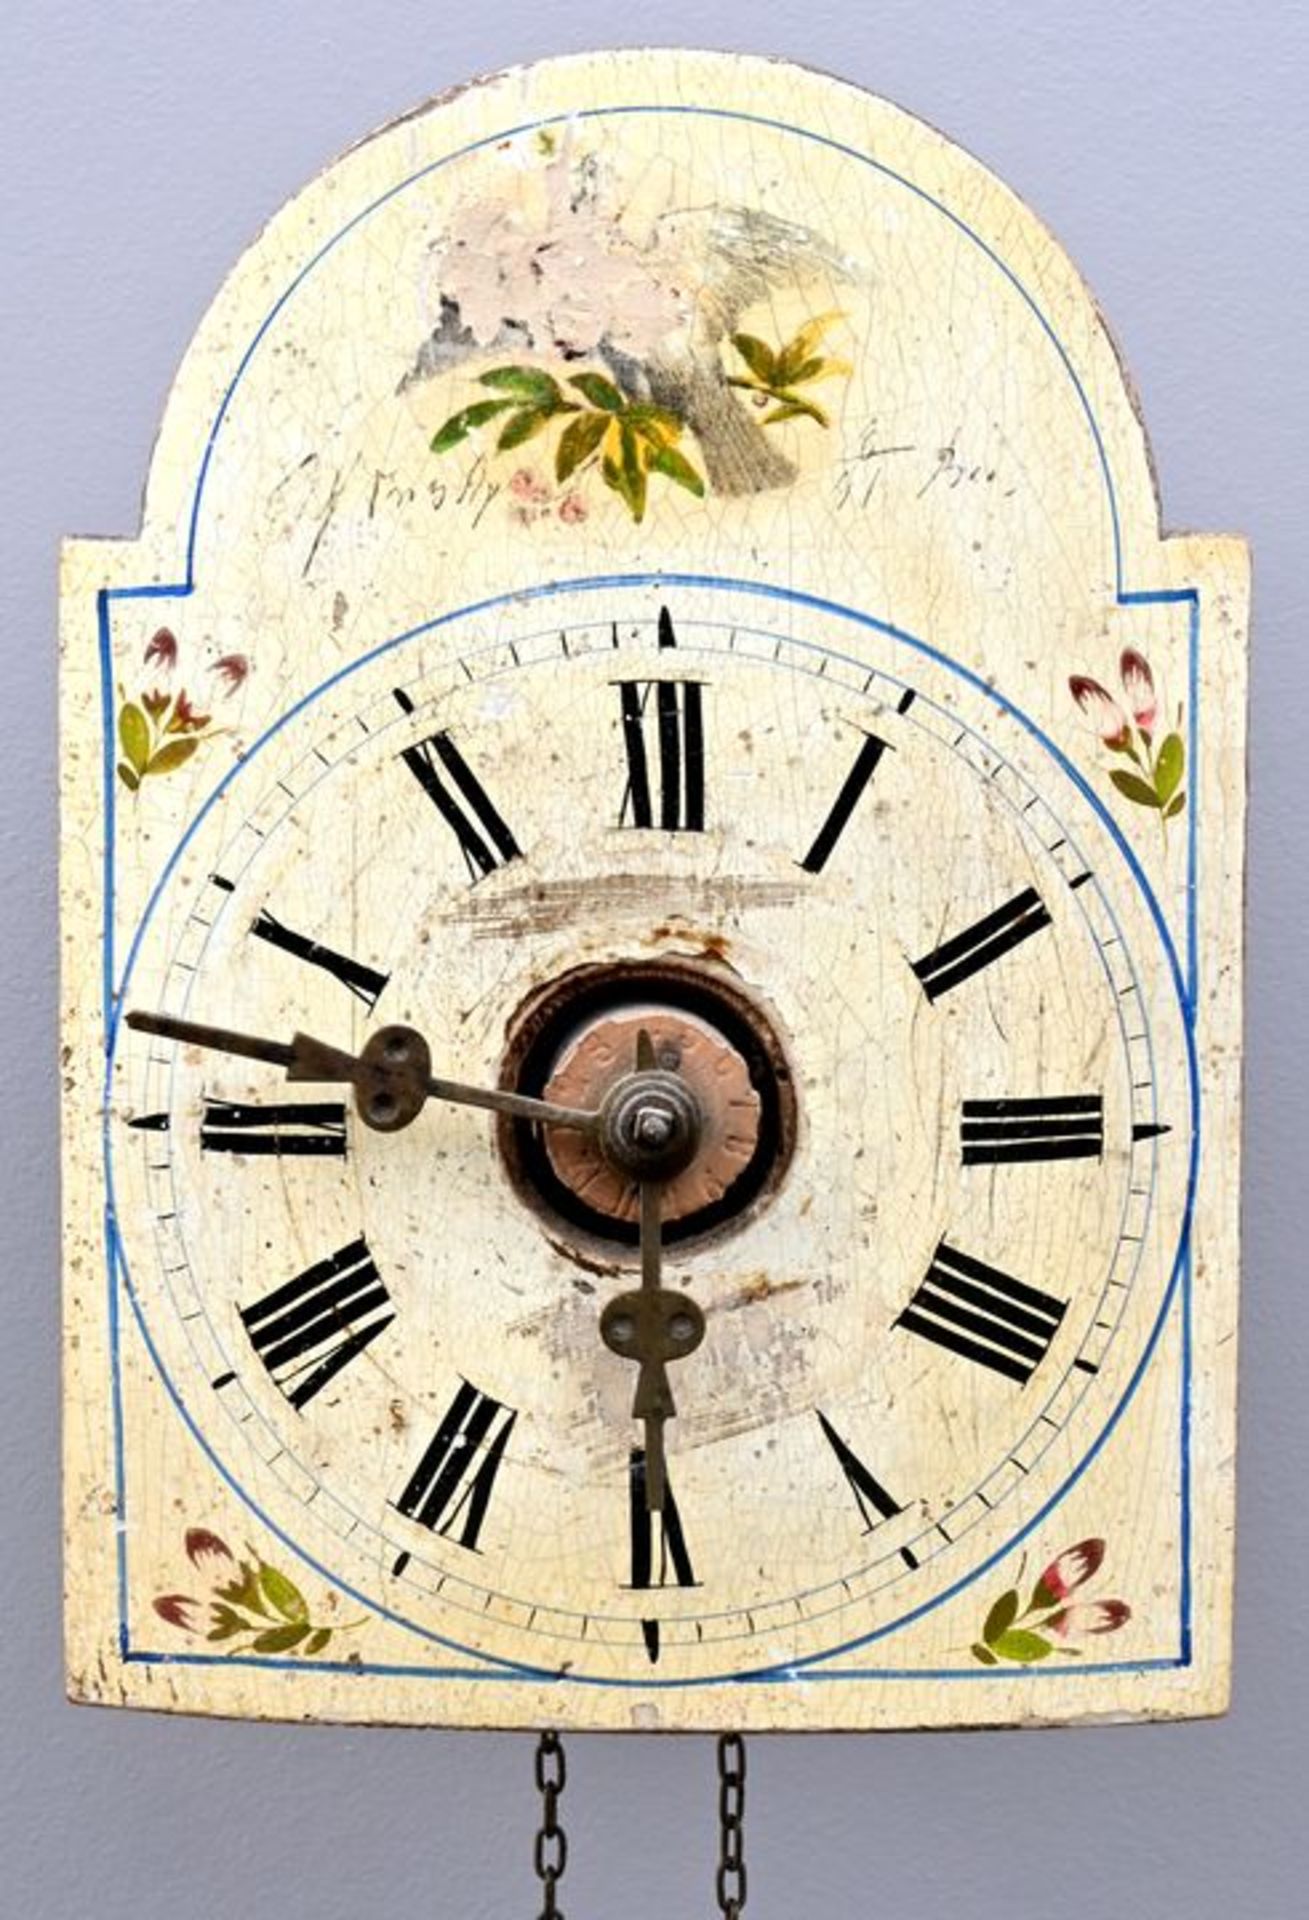 Lackschilduhr / Wall clock